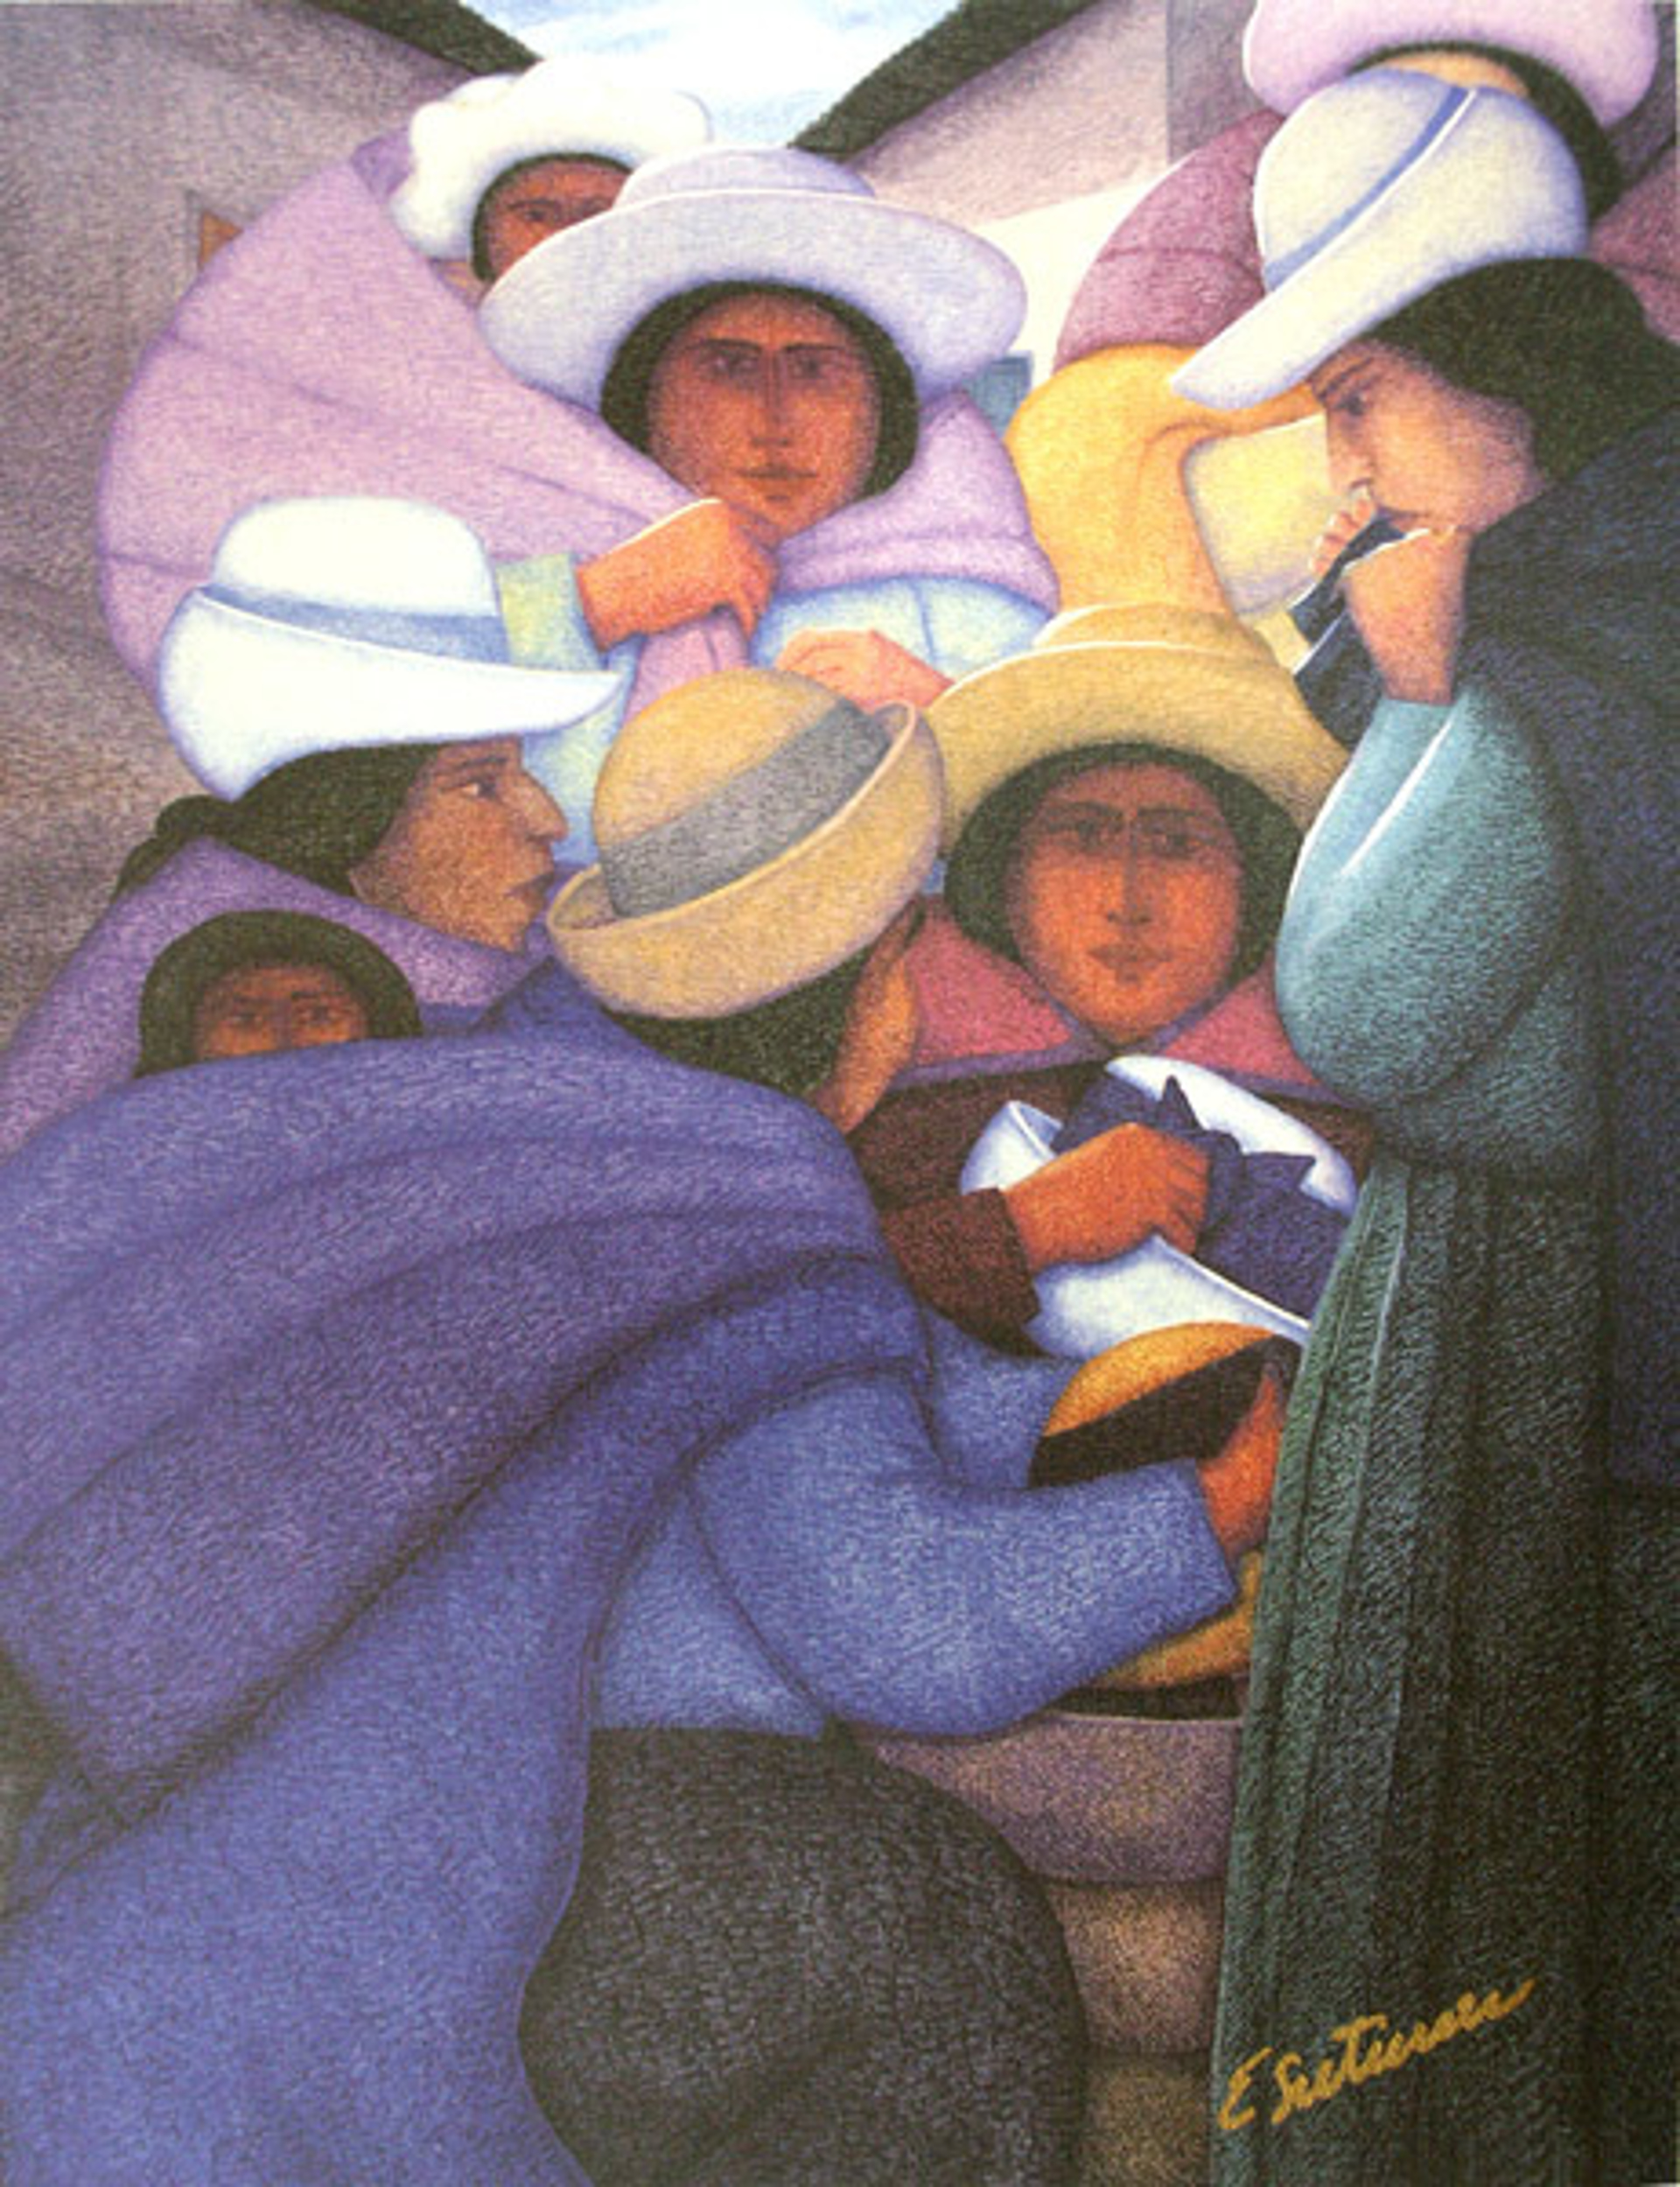 Mujeres De Huancayo by Ernesto Gutierrez